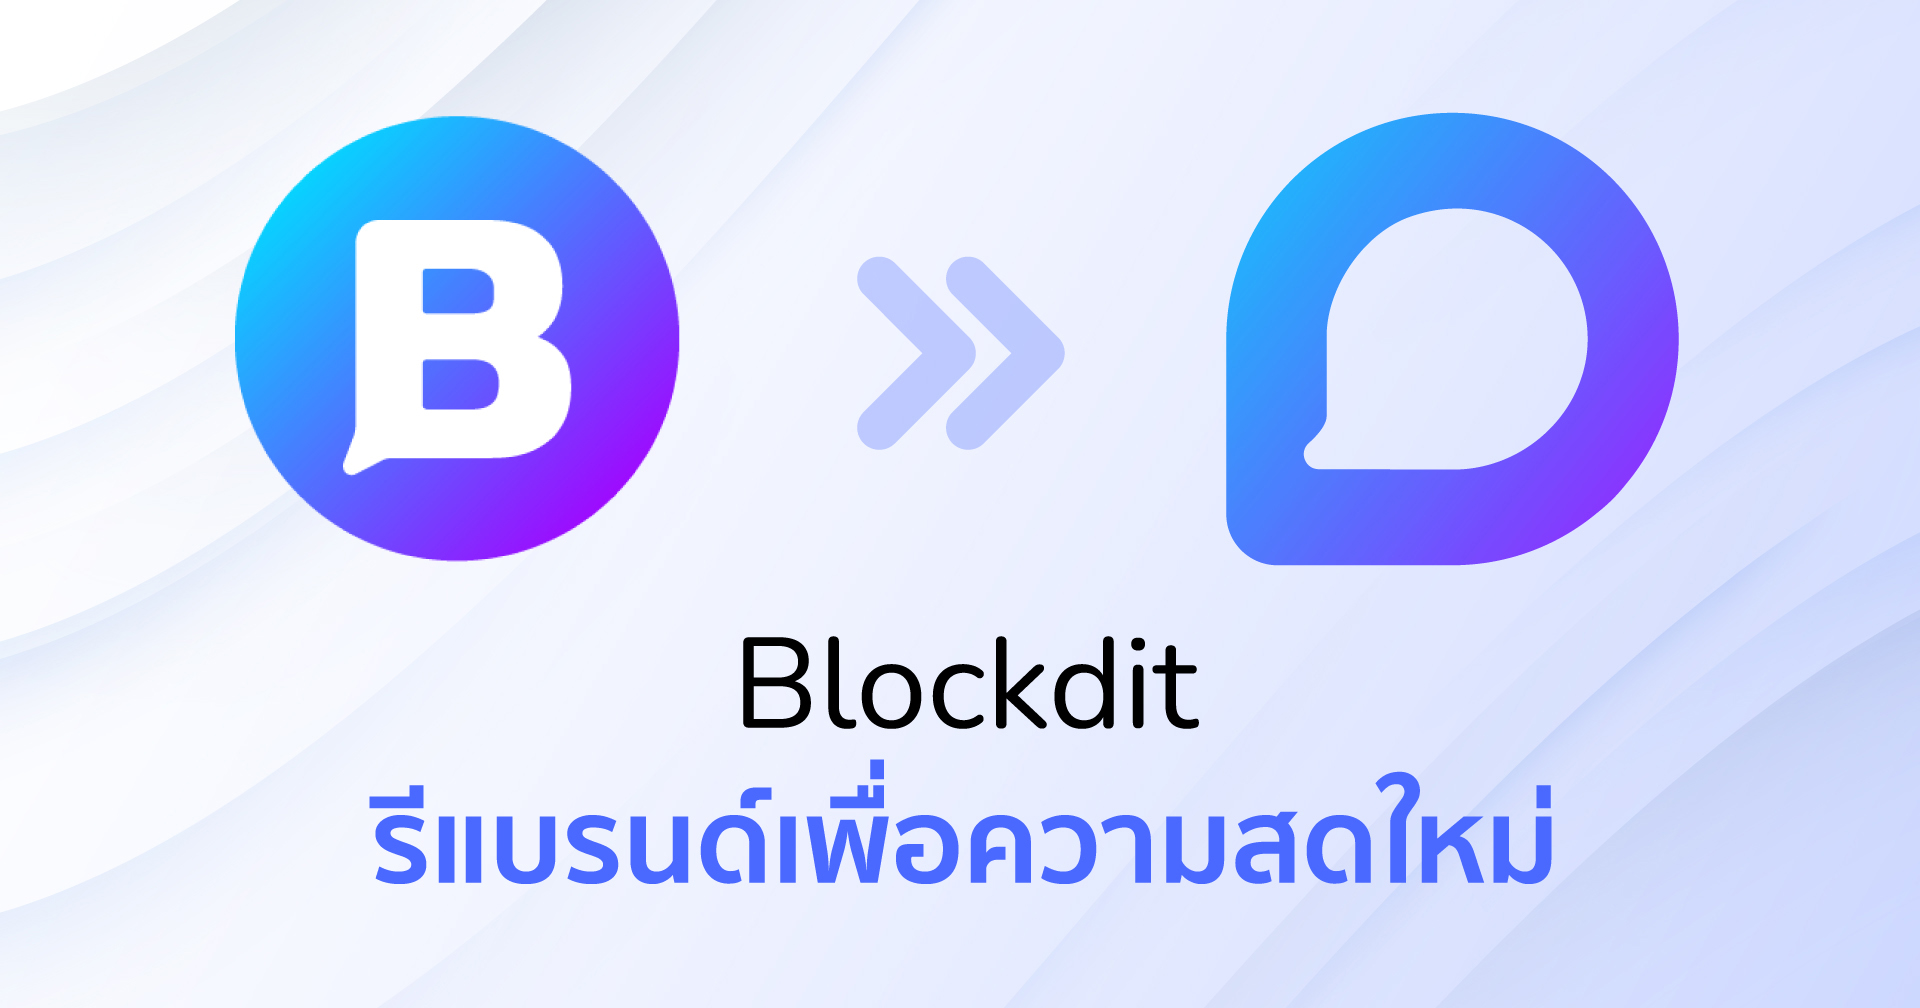 Blockdit เปิดตัวโลโก้ใหม่เพื่อความสดใหม่ รุกตลาด “ไลฟ์สไตล์-ท่องเที่ยว”